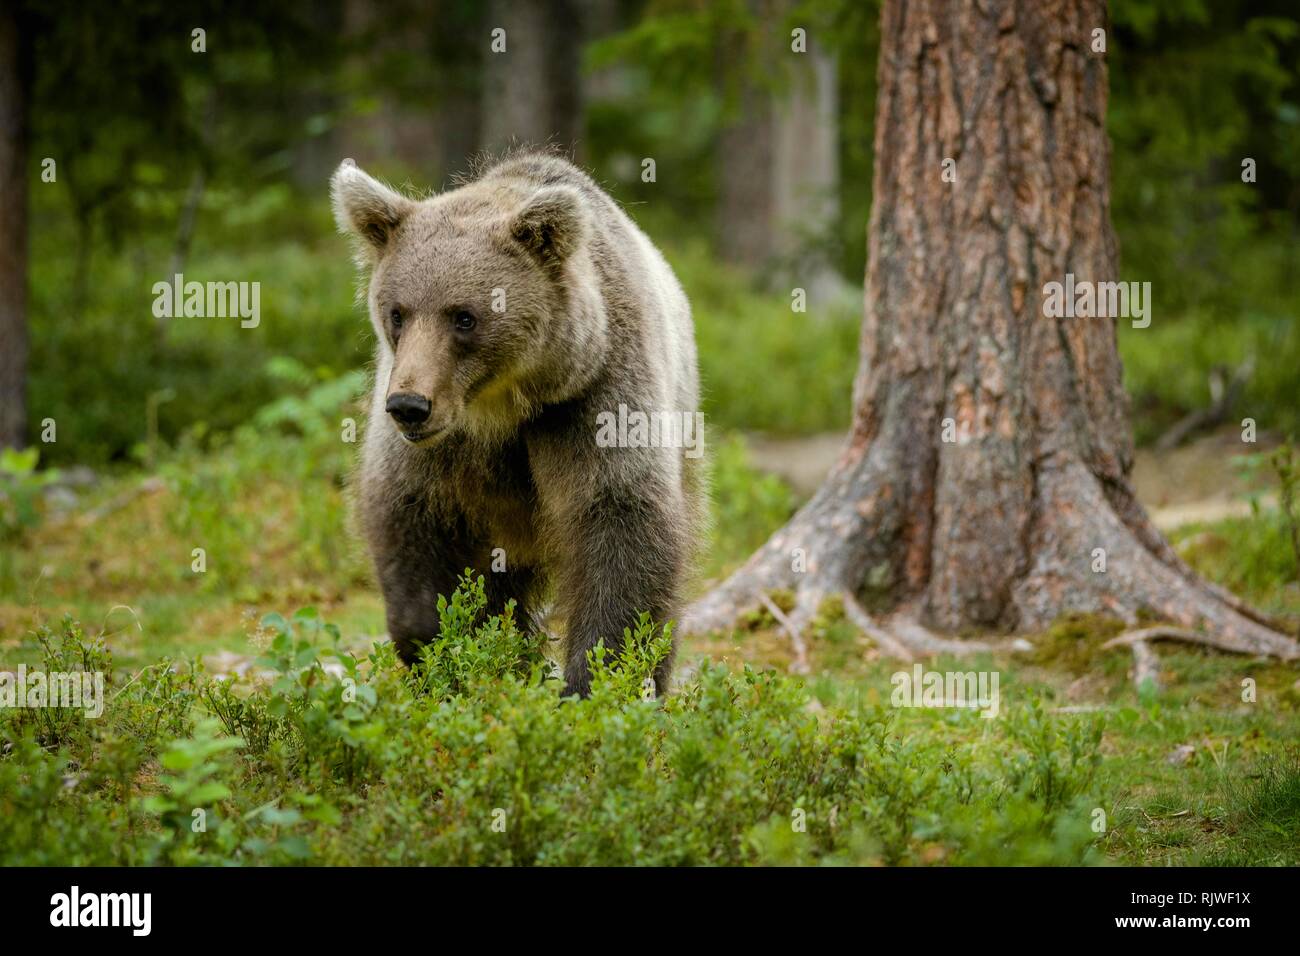 European brown bear (Ursus arctos arctos) runs in the forest, Suomussalmi, Kainuu, Finland Stock Photo